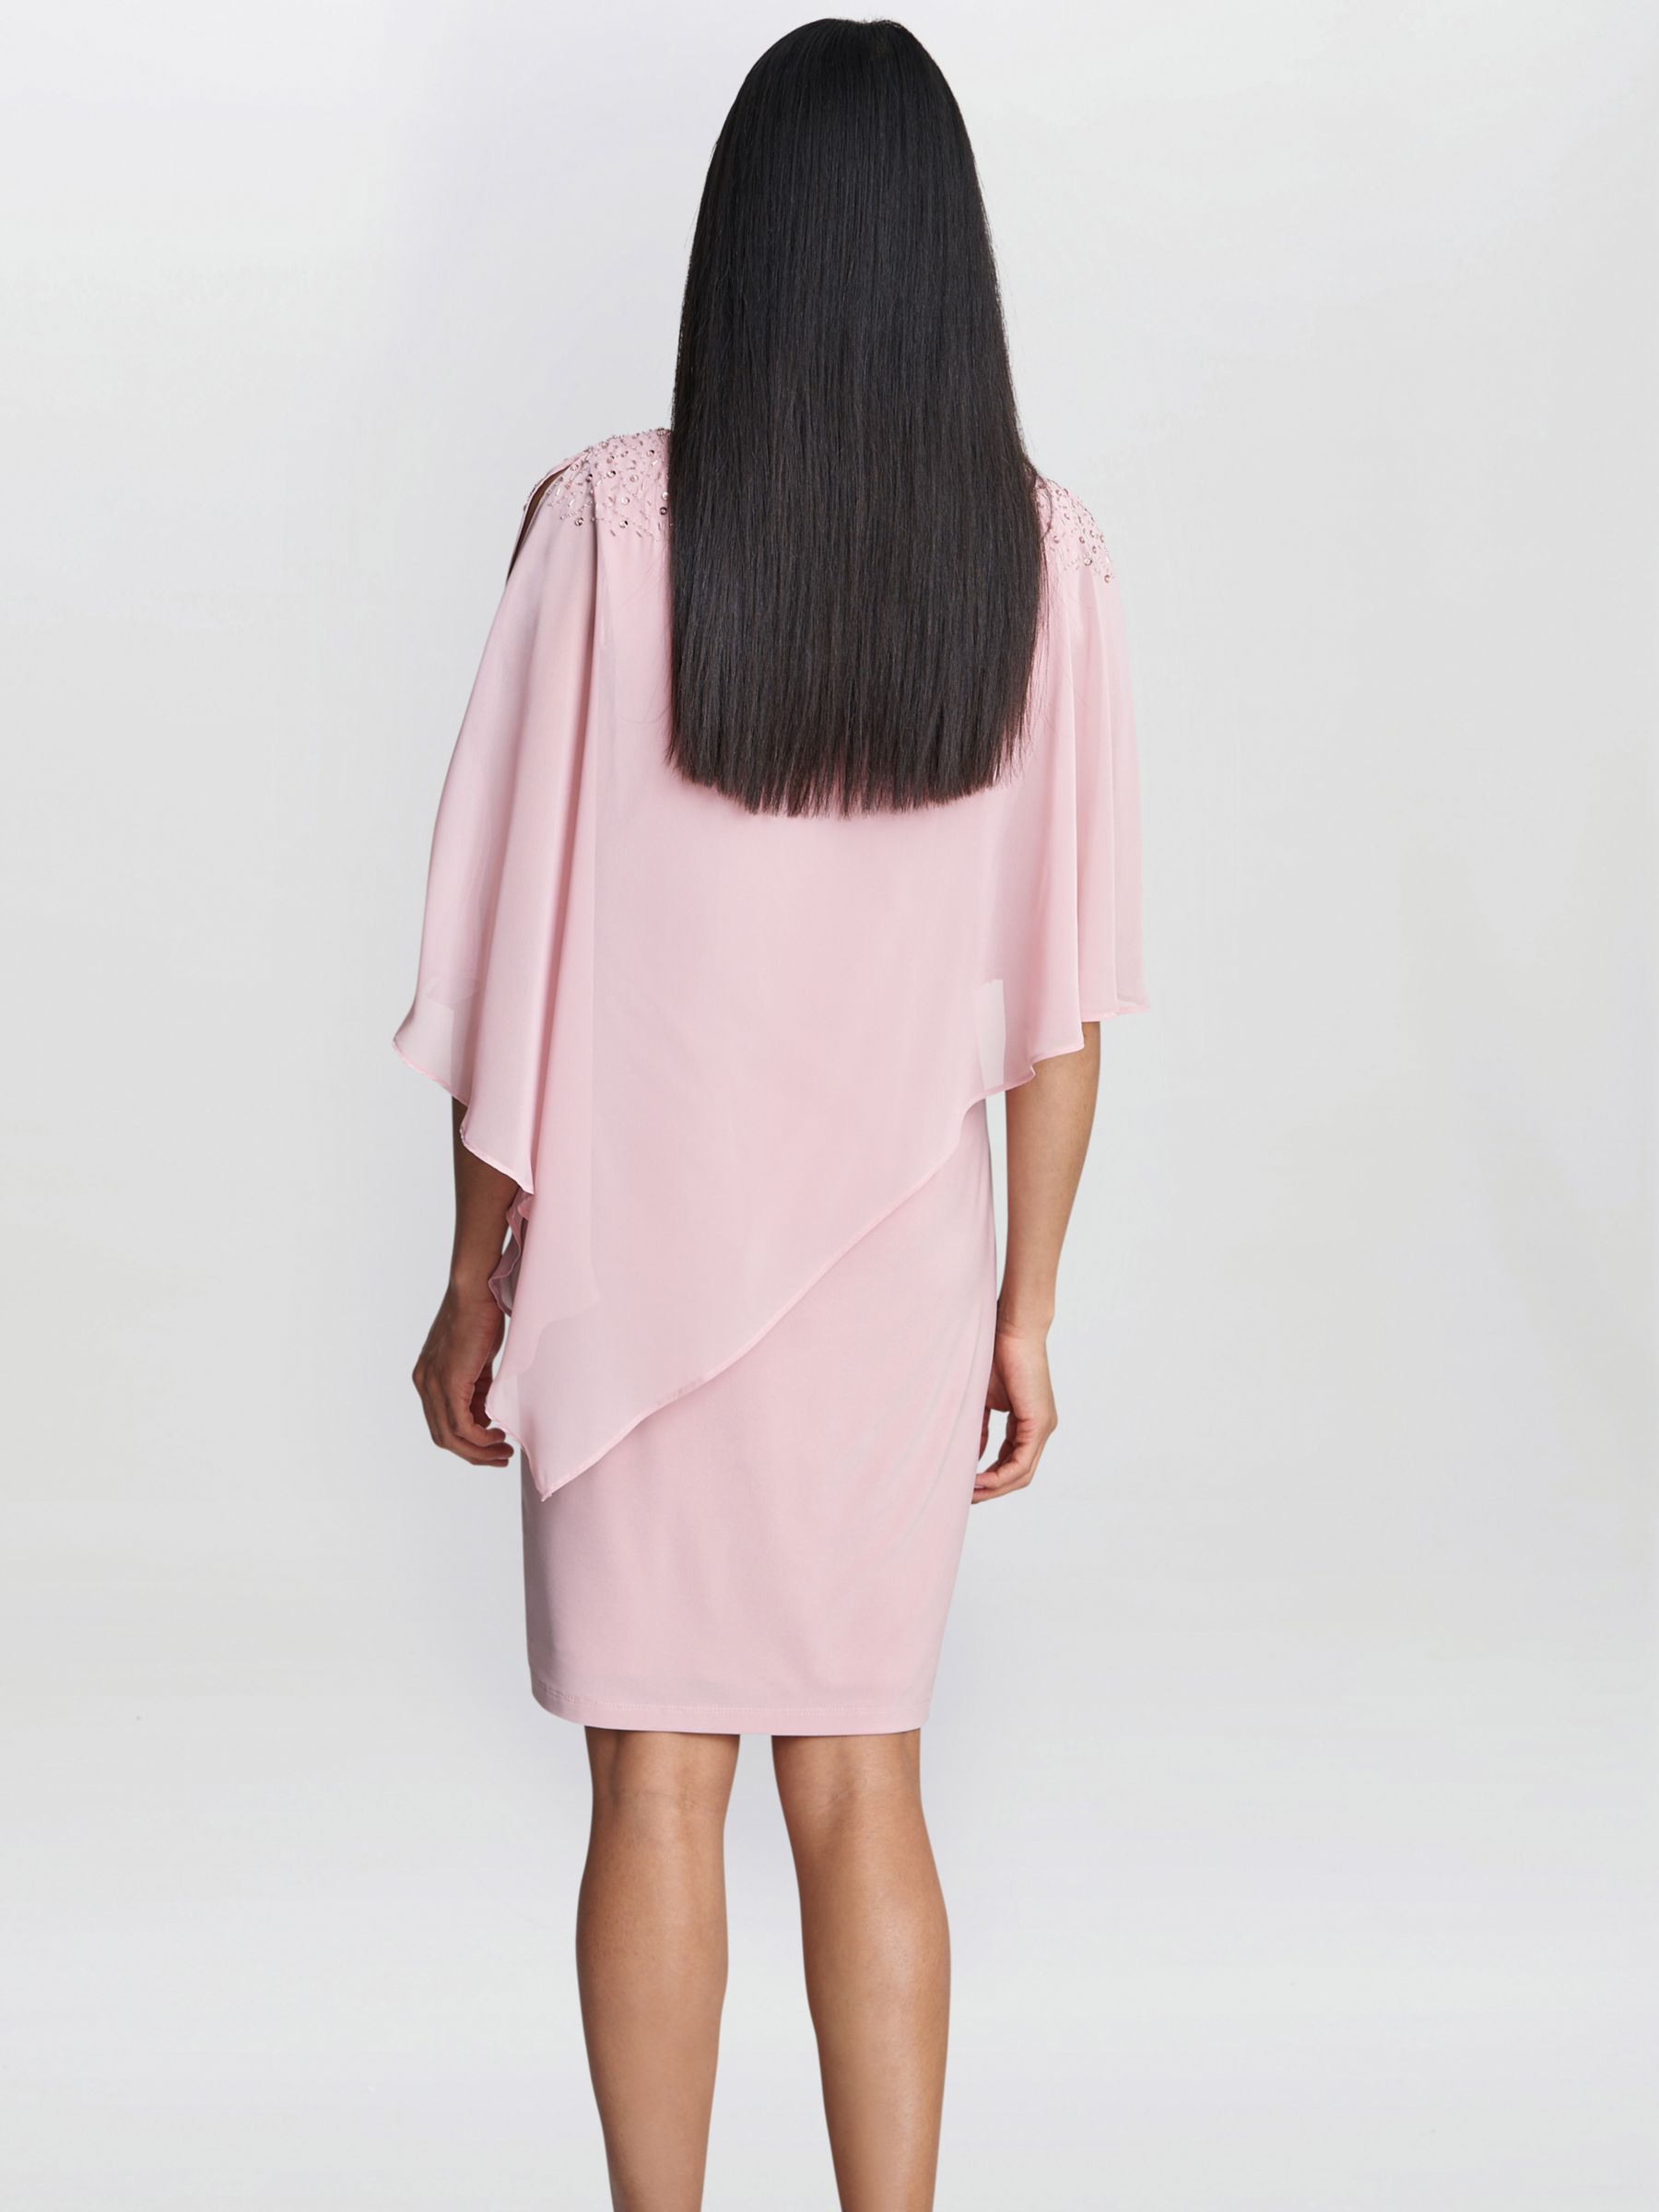 Gina Bacconi Zenna Beaded Shoulder Dress, Rose Pink, 12